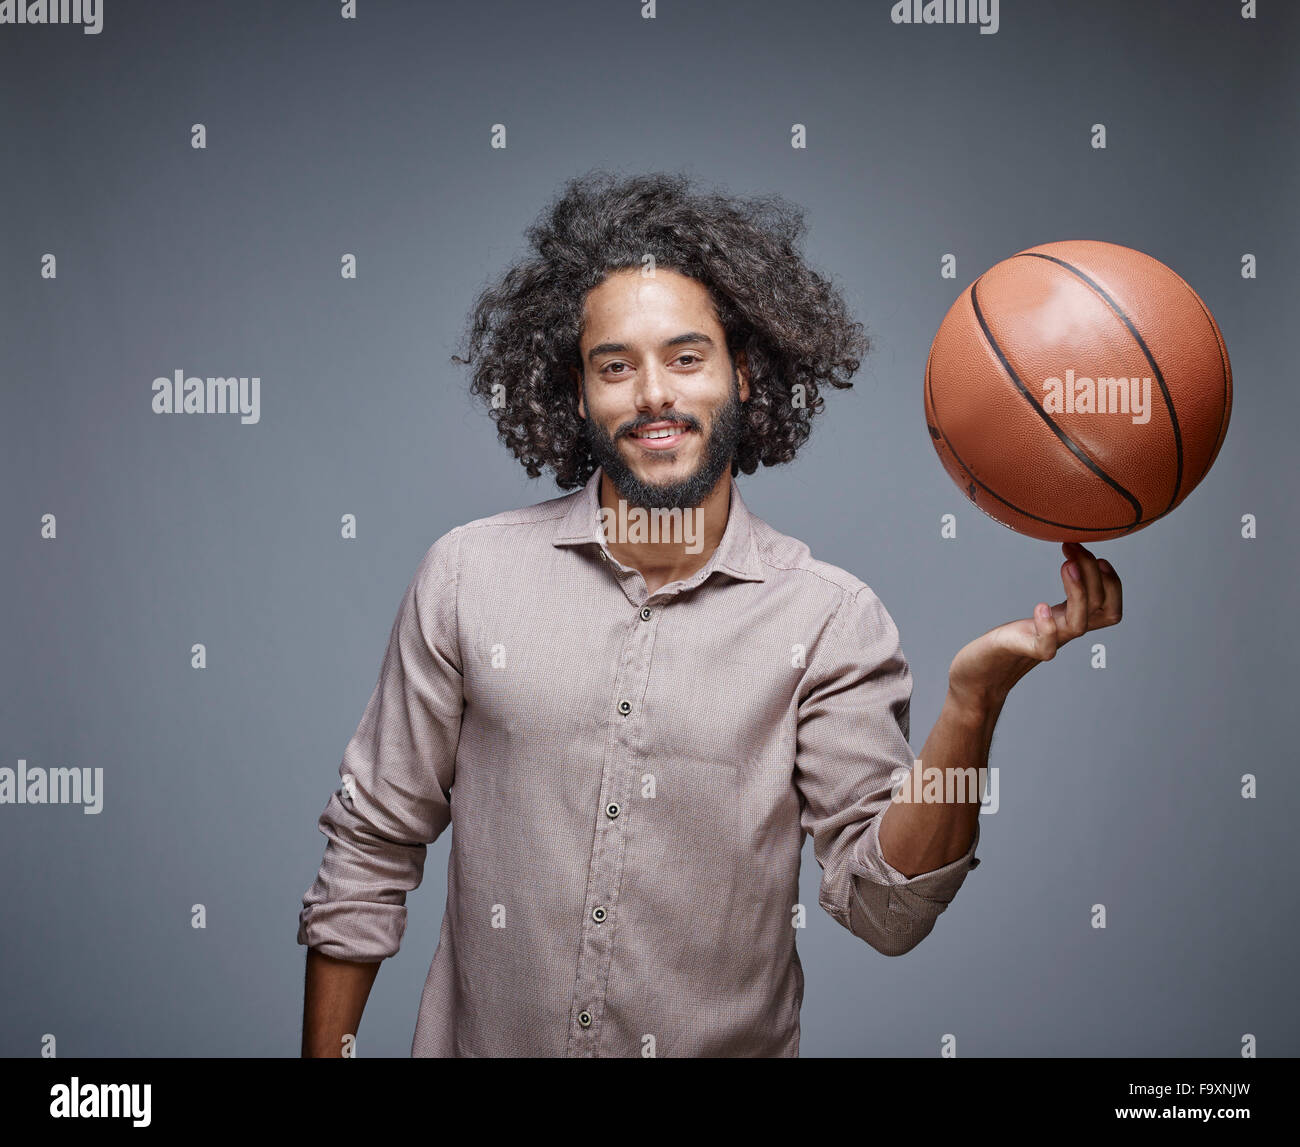 Porträt von lächelnden jungen Mann mit lockigen braunen Haaren einen Basketball auf dem Finger balancieren Stockfoto